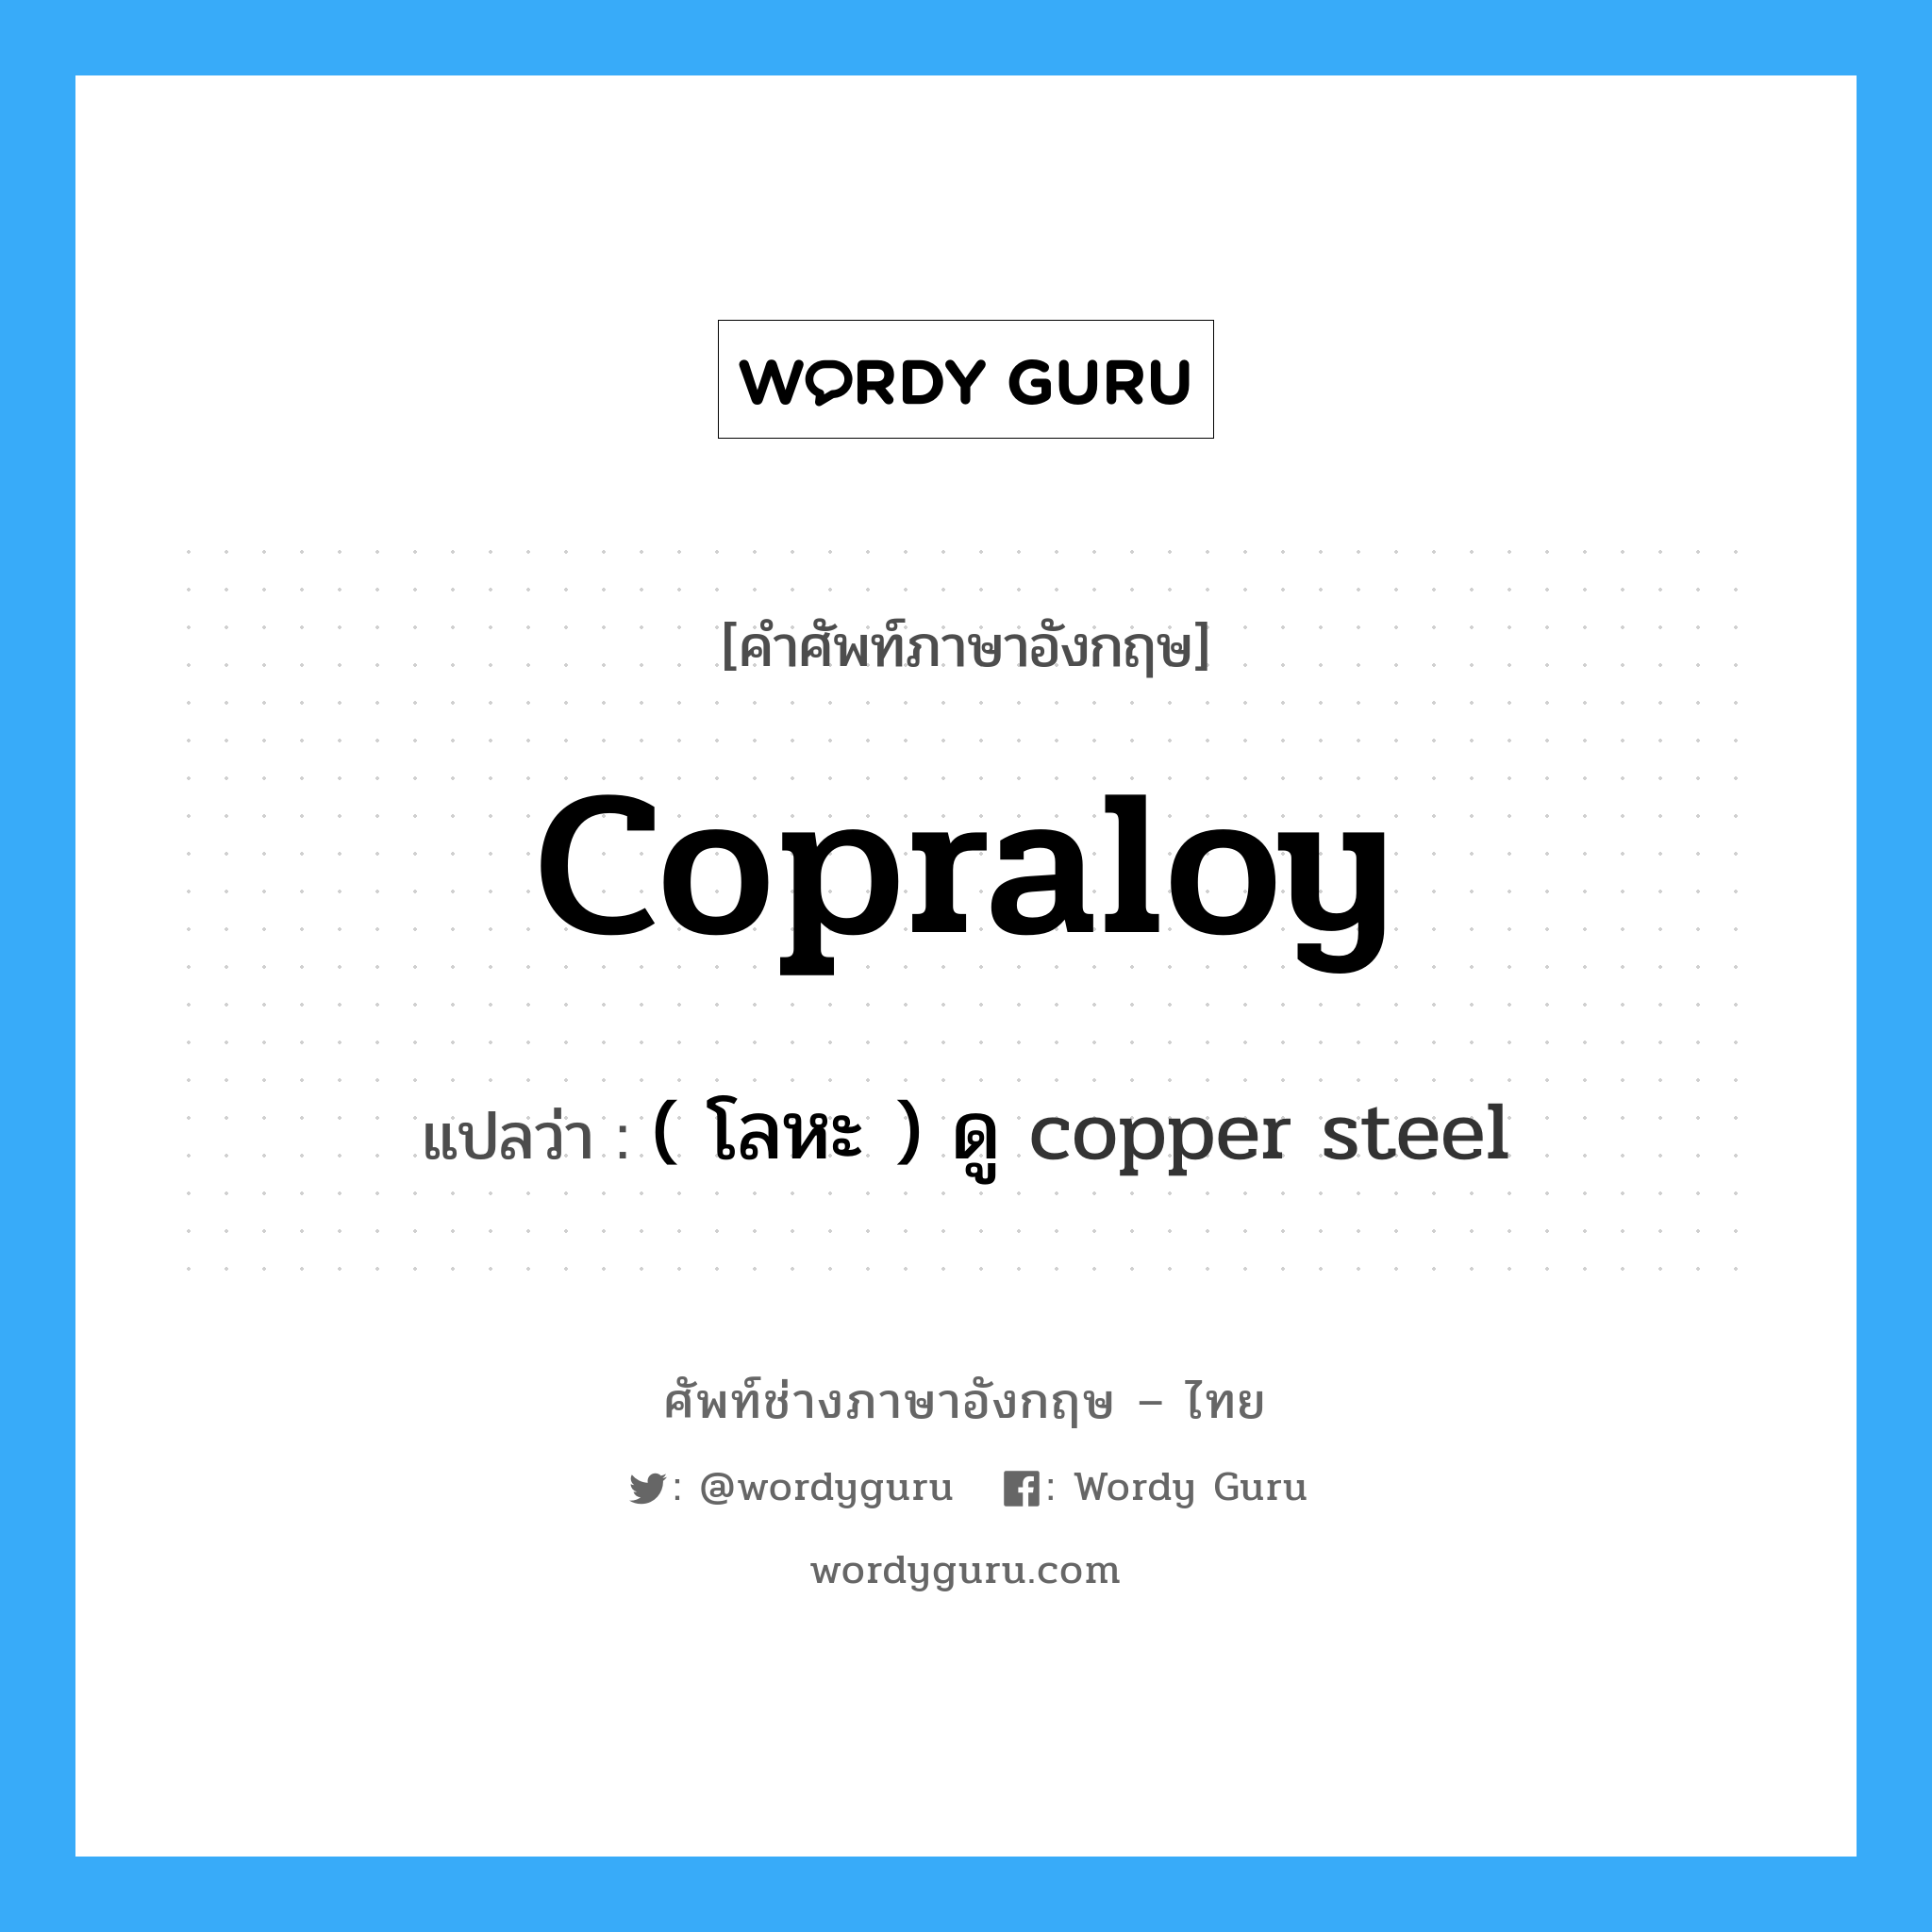 ( โลหะ ) ดู copper steel ภาษาอังกฤษ?, คำศัพท์ช่างภาษาอังกฤษ - ไทย ( โลหะ ) ดู copper steel คำศัพท์ภาษาอังกฤษ ( โลหะ ) ดู copper steel แปลว่า copraloy